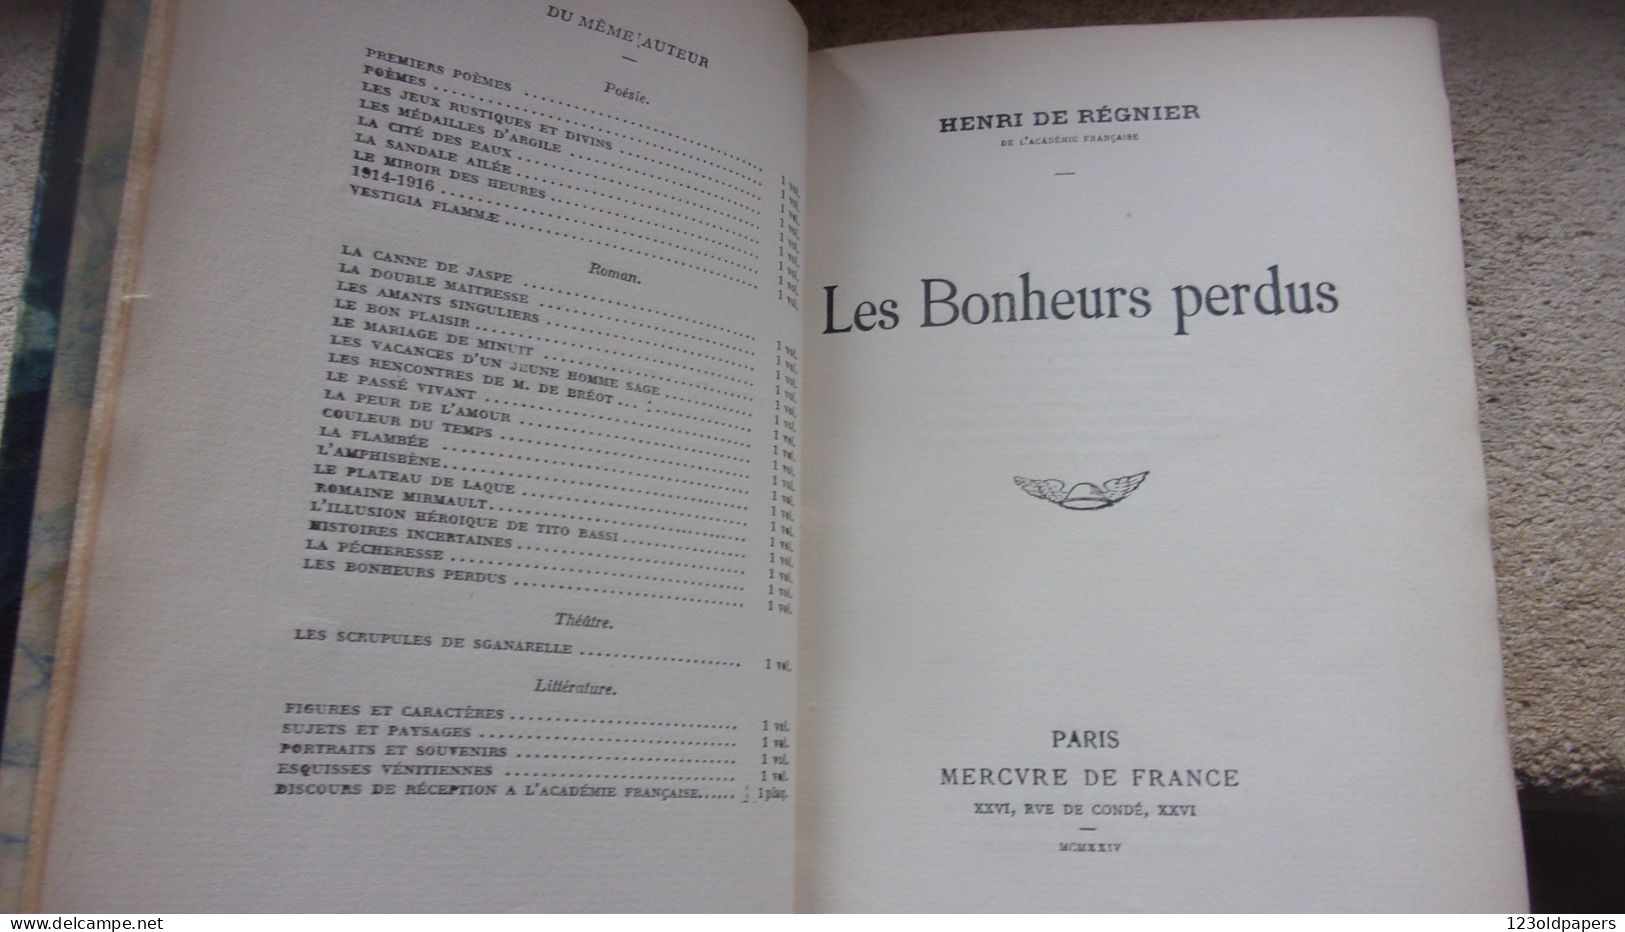 EO Henri de REGNIER  Les bonheurs perdus  Mercure de France, Paris 1924, BELLE RELIURE EX NUMEROTE VERGE PUR FIL LAFUMA